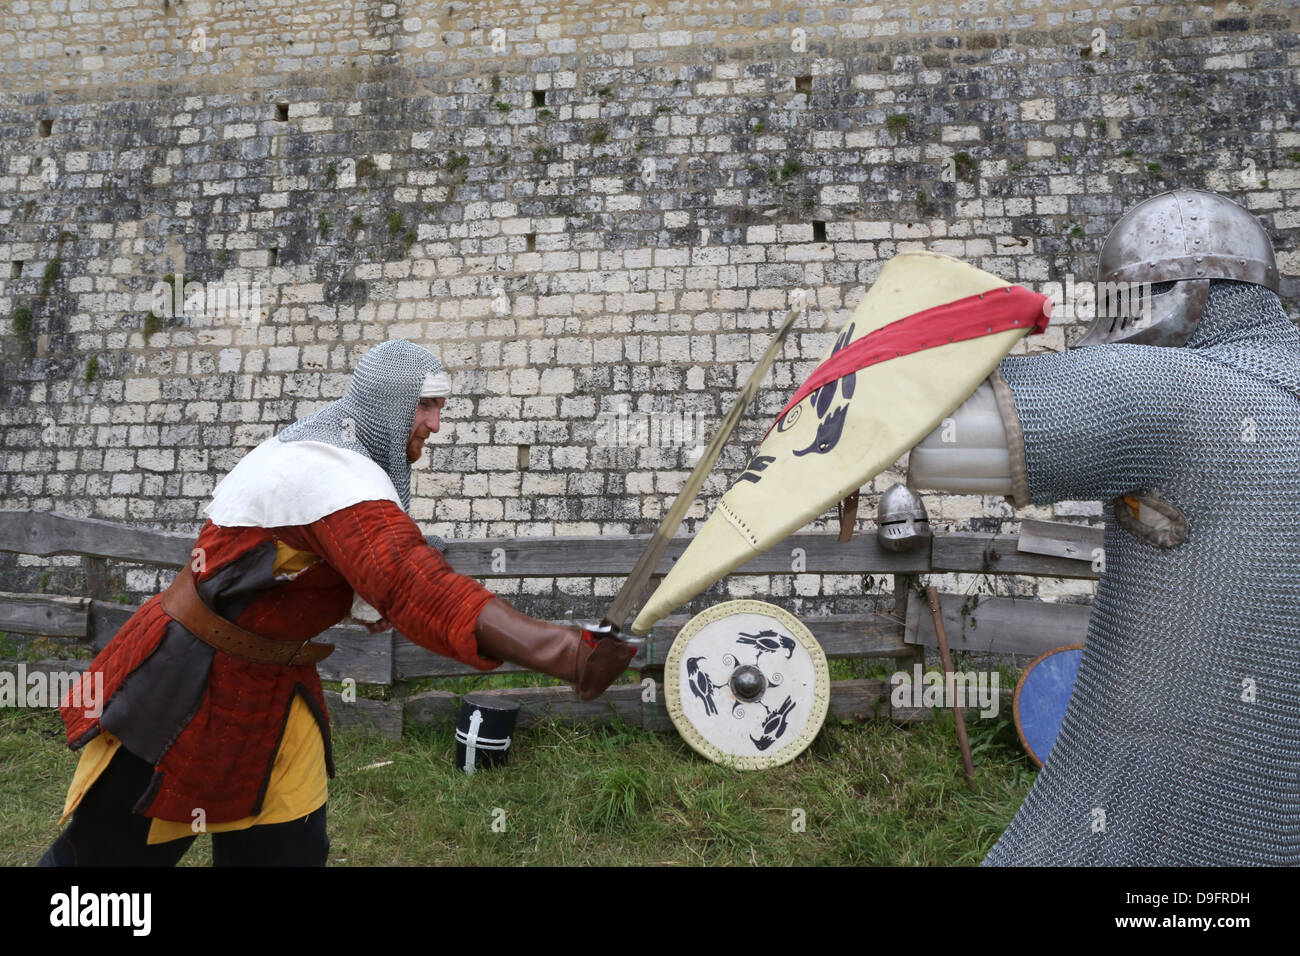 Battaglia di cavalieri, la festa medievale di Provins, Sito Patrimonio Mondiale dell'UNESCO, Seine et Marne, Ile-de-France, Francia Foto Stock